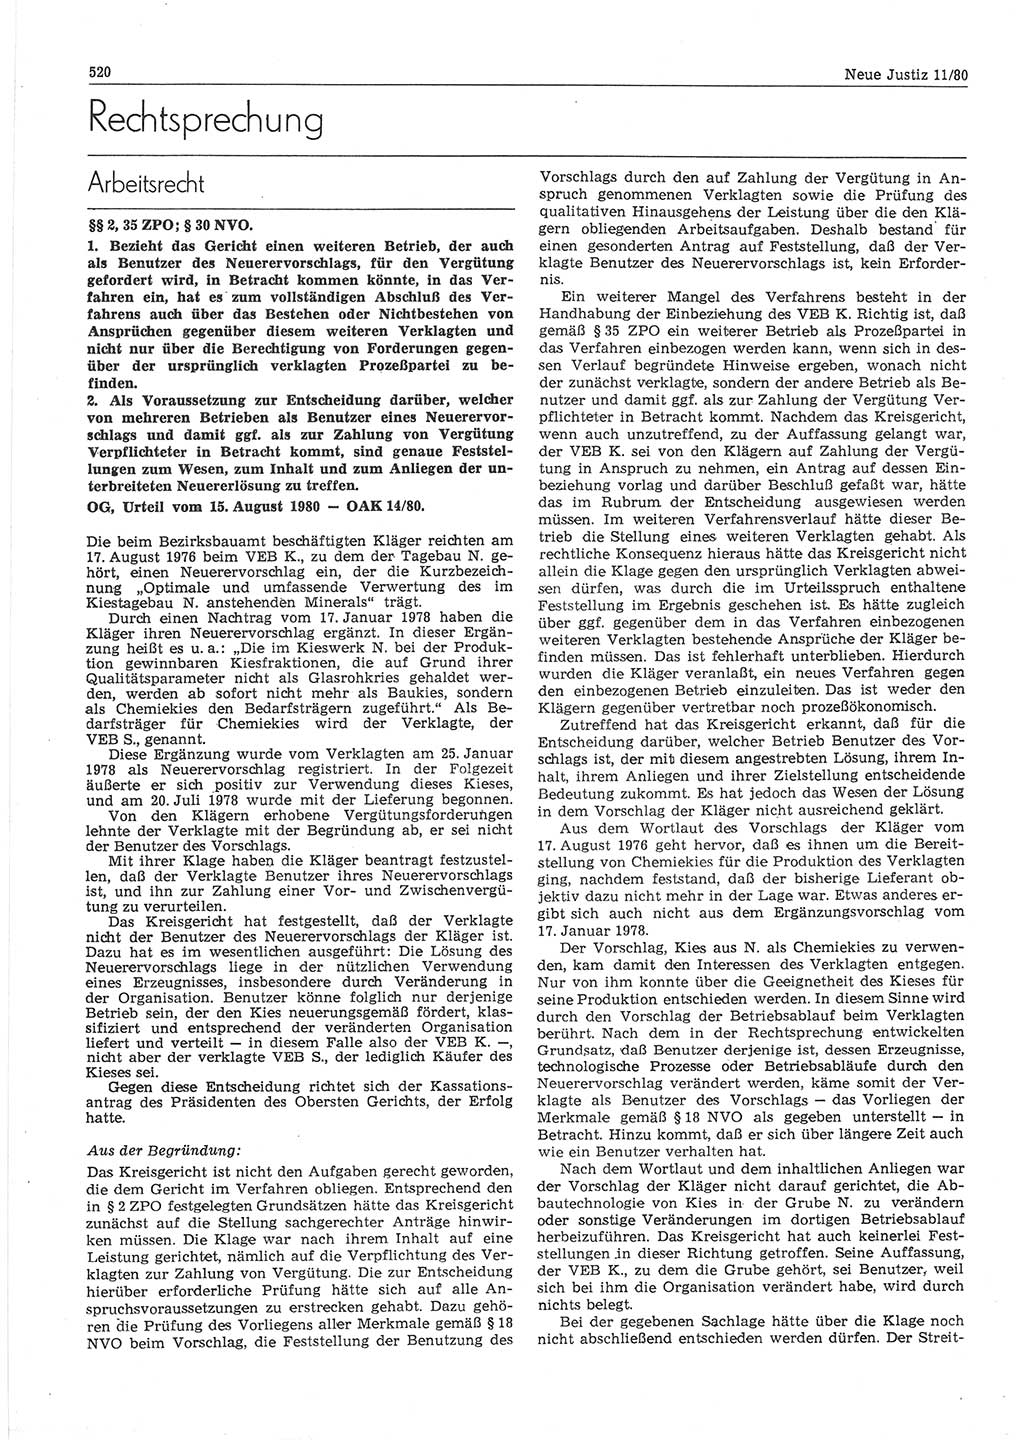 Neue Justiz (NJ), Zeitschrift für sozialistisches Recht und Gesetzlichkeit [Deutsche Demokratische Republik (DDR)], 34. Jahrgang 1980, Seite 520 (NJ DDR 1980, S. 520)